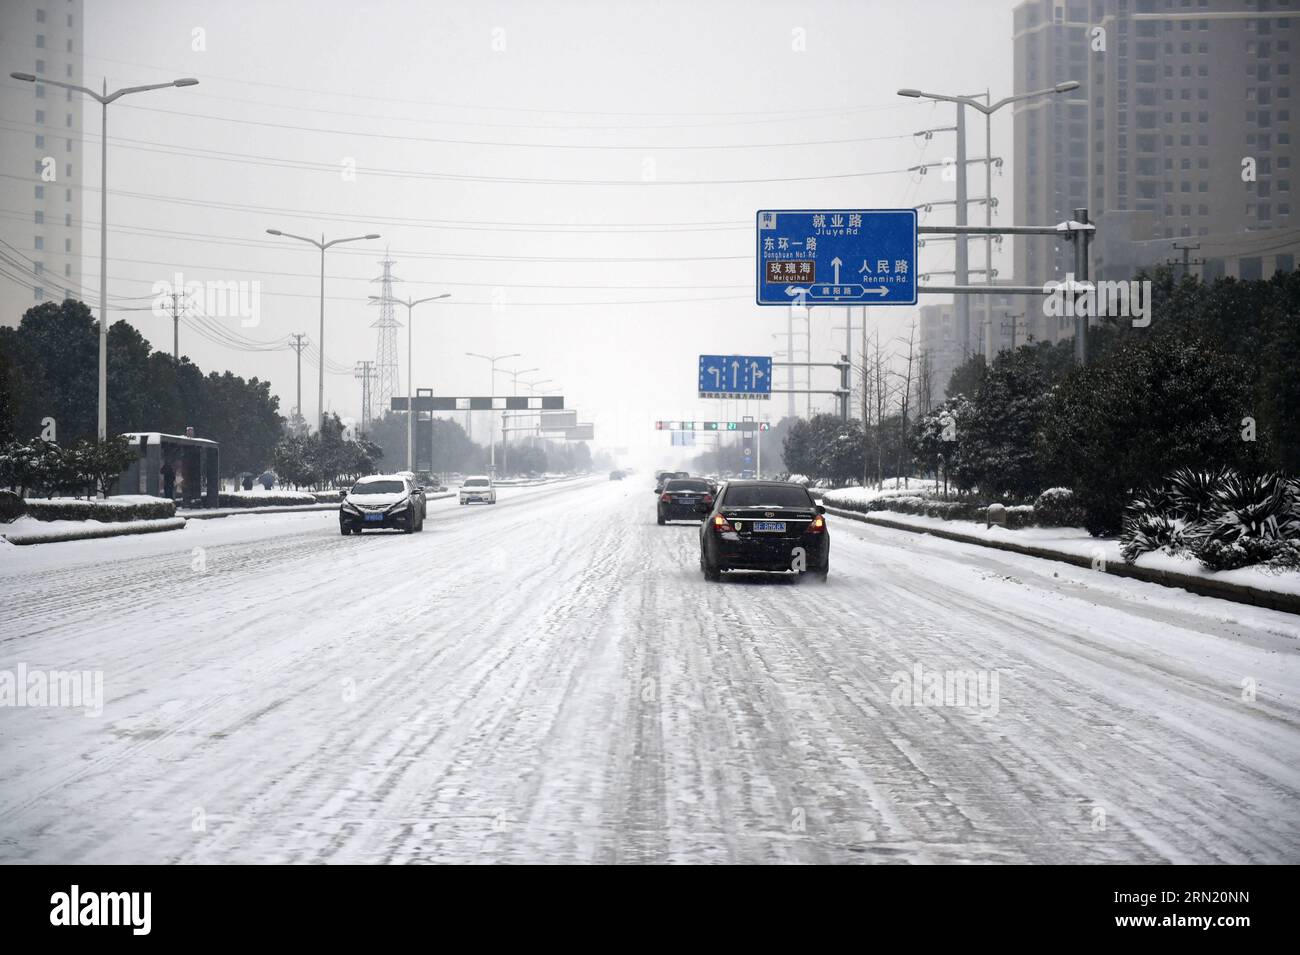 (150129) -- WUHAN, 29 janvier 2015 -- des véhicules roulent dans la neige dans la ville de Xiangyang, dans la province du Hubei, au centre de la Chine, le 29 janvier 2015. La pluie et la neige continuelles ont frappé la province depuis mercredi. ) (Wyo) CHINA-HUBEI-SNOWFALL (CN) HaoxTongqian PUBLICATIONxNOTxINxCHN Wuhan Jan 29 2015 VÉHICULES dans la neige dans la ville de Xiang Yang Centre Chine S province du Hubei Jan 29 2015 continu pluie et neige a frappé la province depuis mercredi Chine Hubei Snowfall CN PUBLICATIONxNOTxINxCHN Banque D'Images